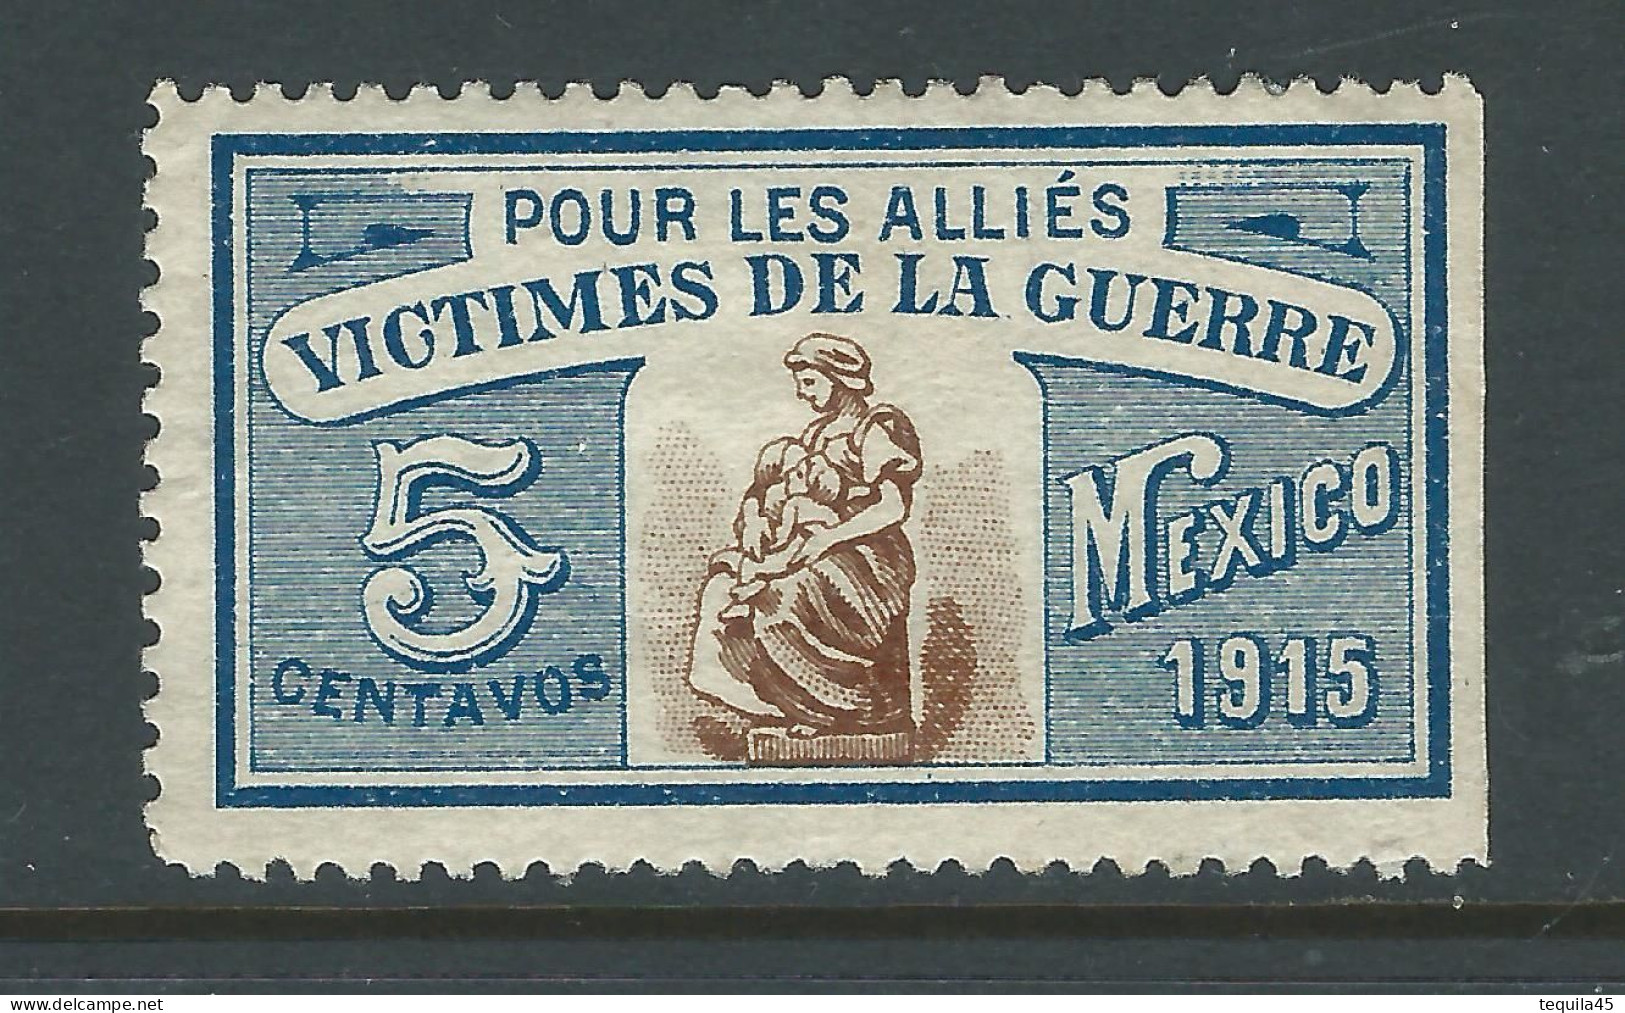 VIGNETTE CROIX-ROUGE Non DELANDRE FRANCE Comité De MEXICO 1915 WWI WW1 Cinderella Poster Stamp 1914 1918 War - Cruz Roja